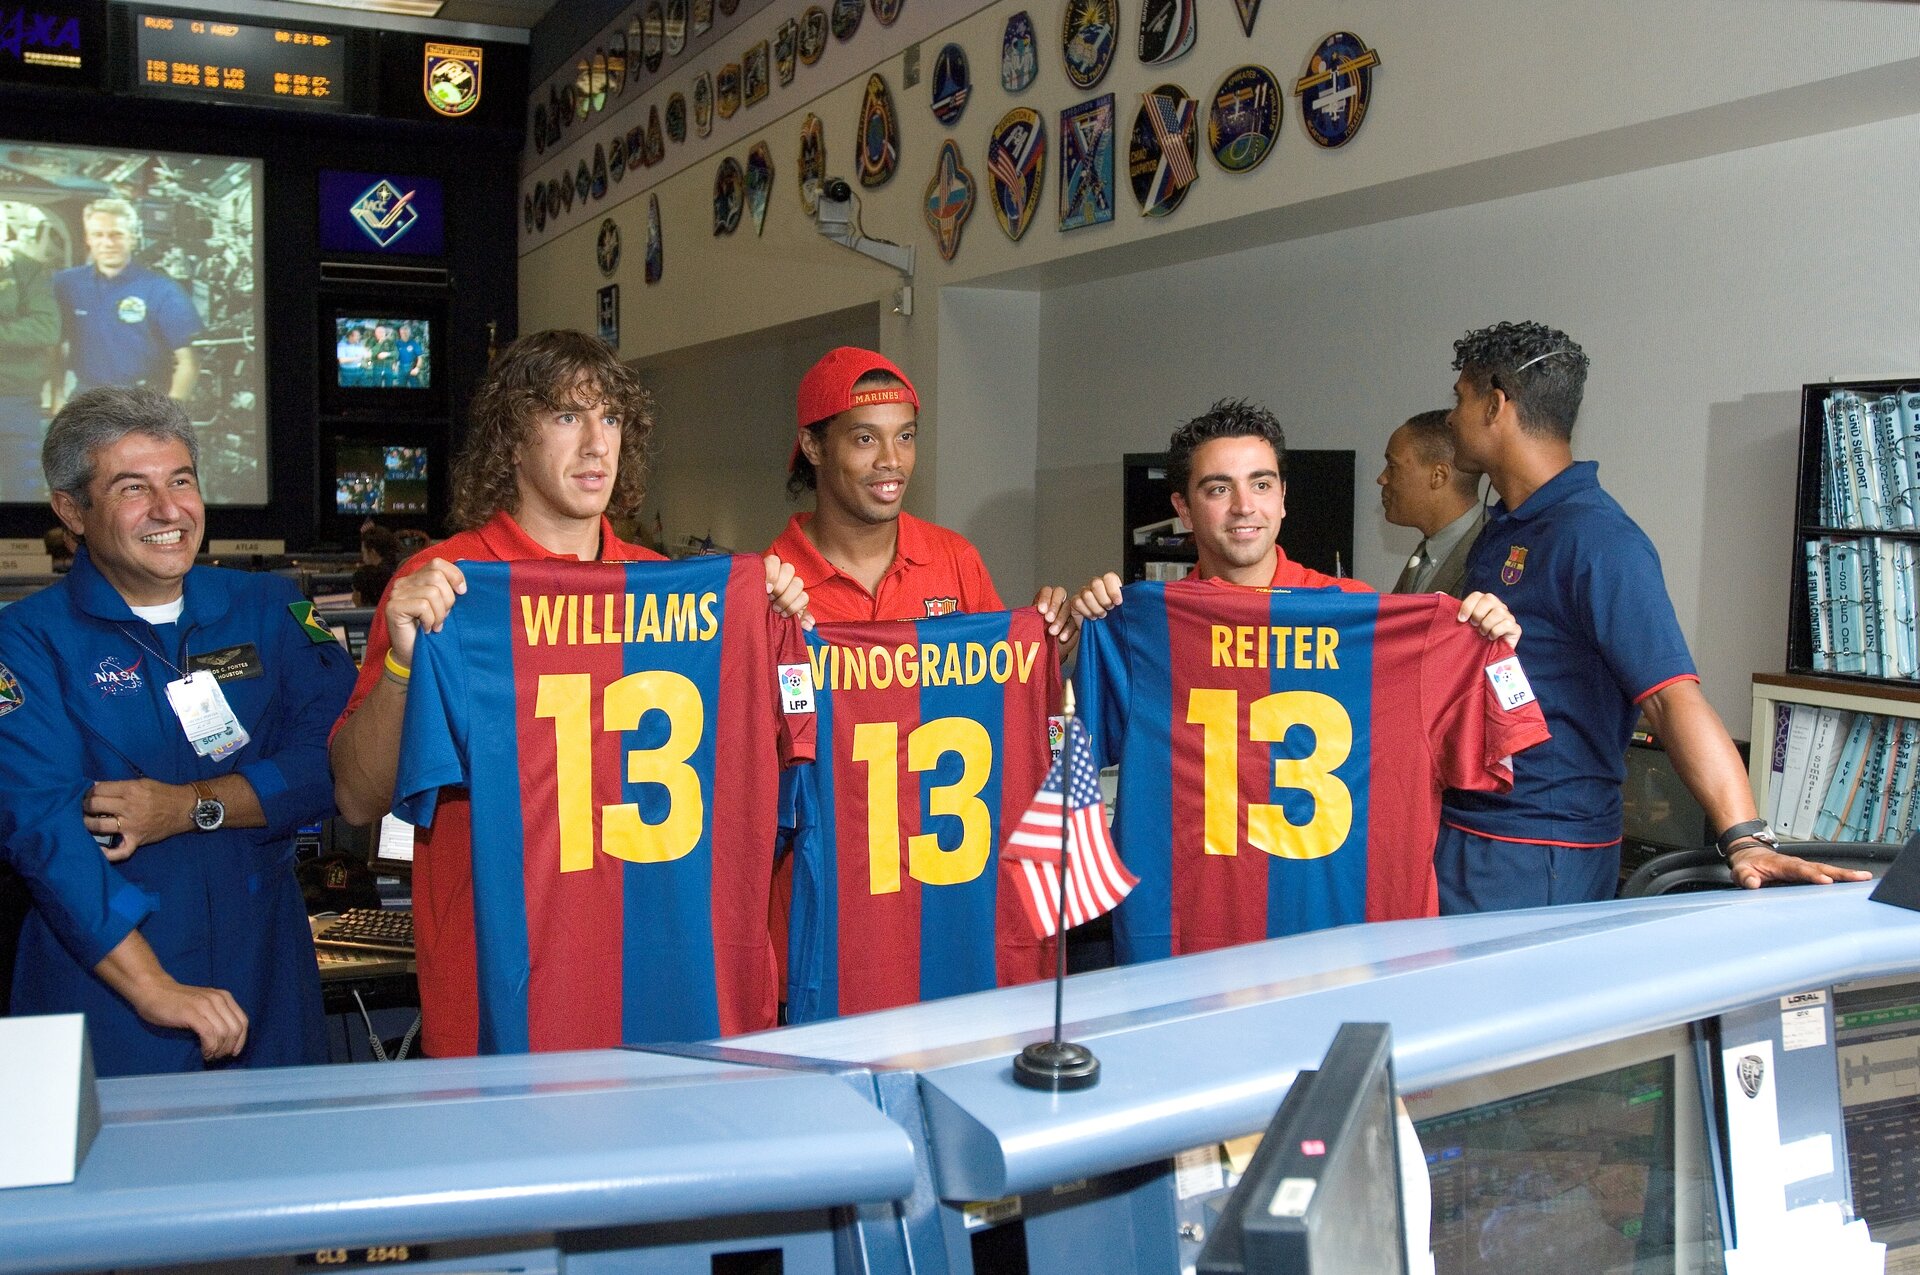 Het voetbalteam uit Spanje bracht clubshirts mee met rugnummer dertien en de naam van de bemanningsleden